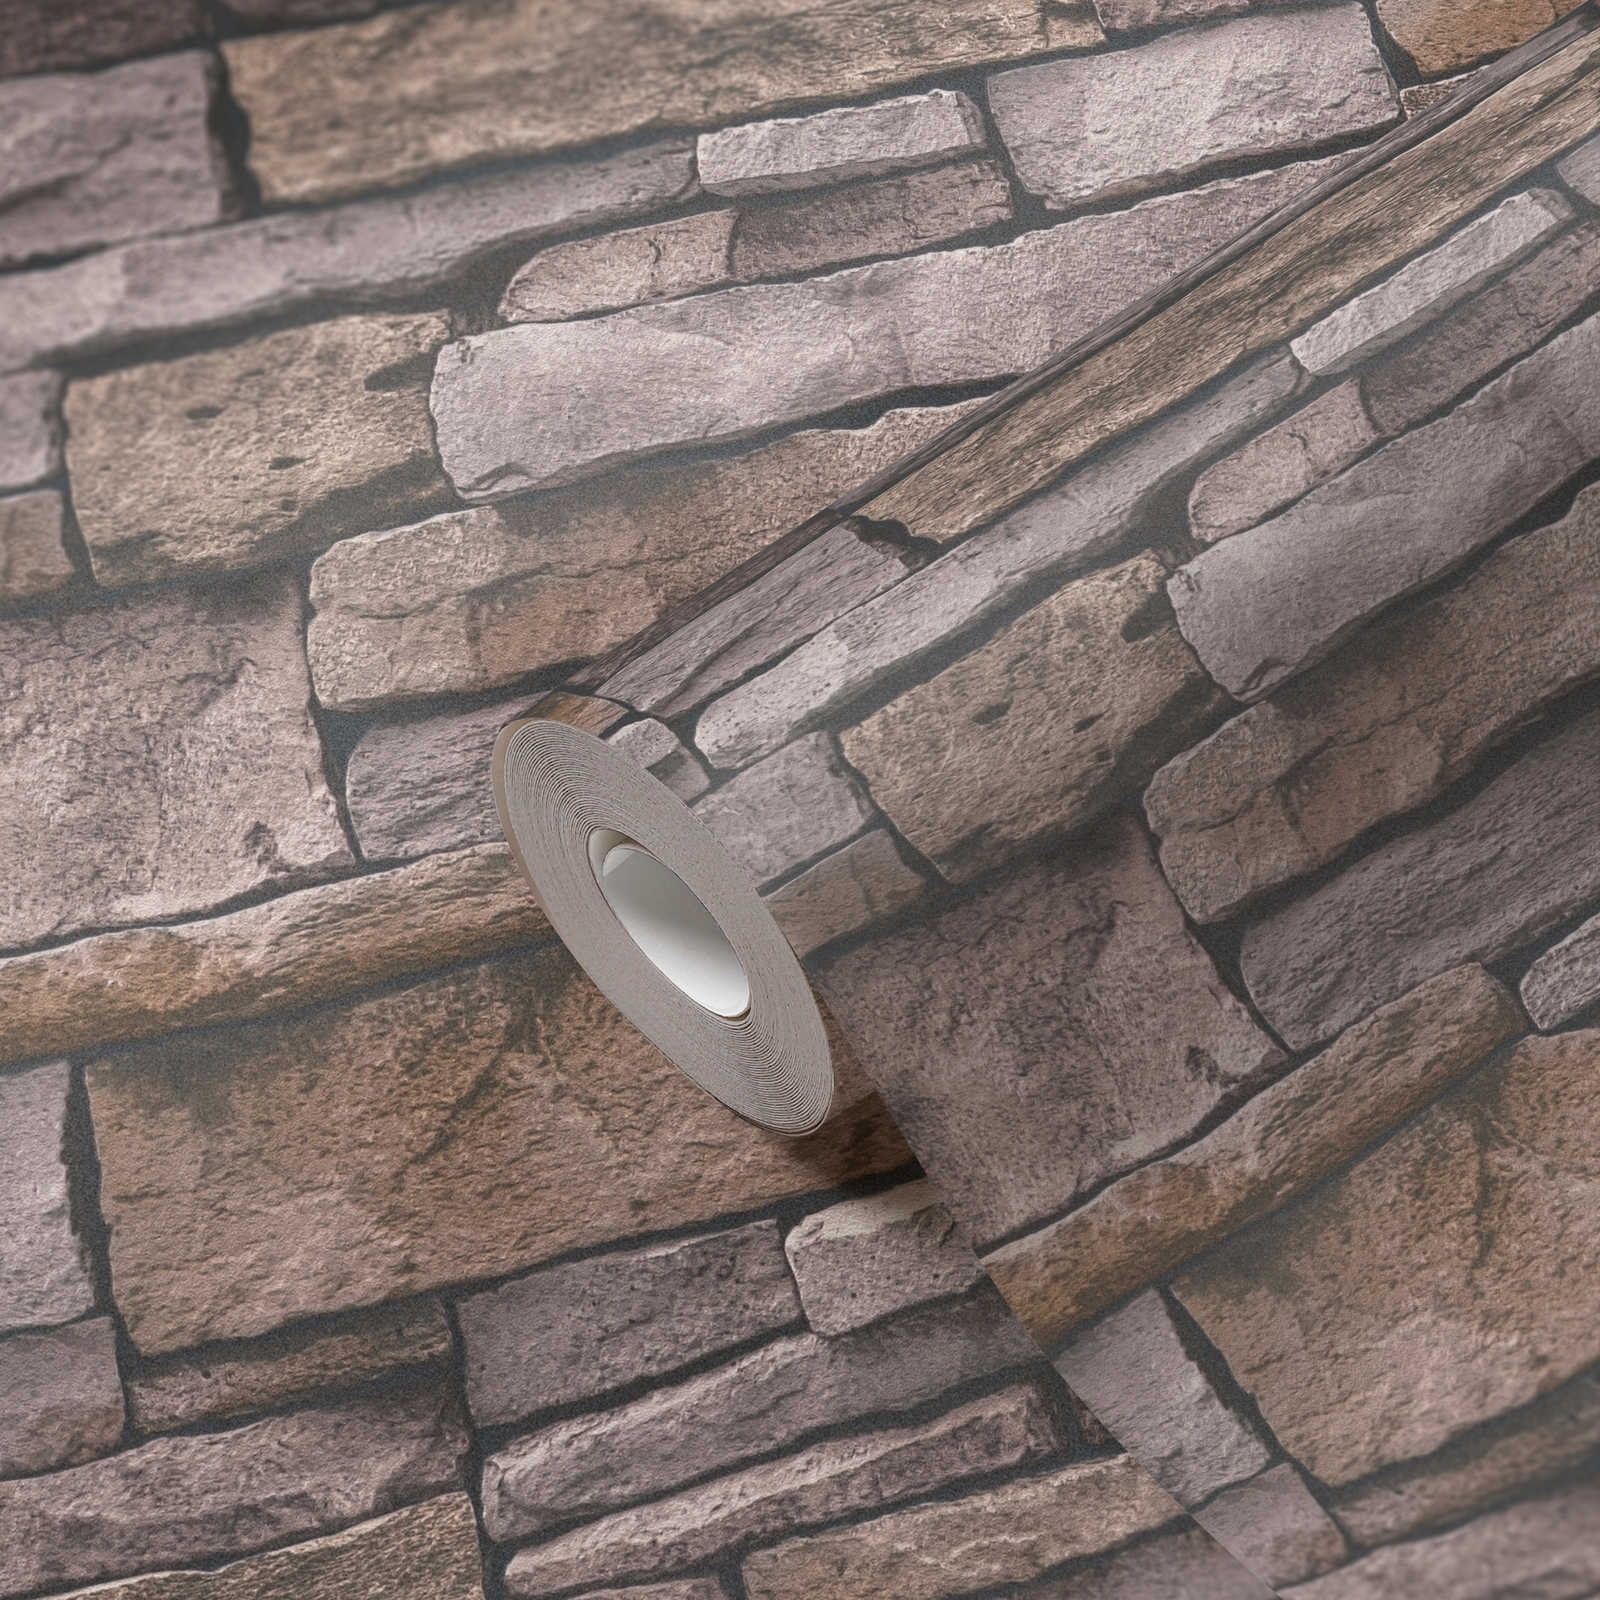             Steinoptik Vliestapete mit Natursteinmauer – Beige, Braun
        